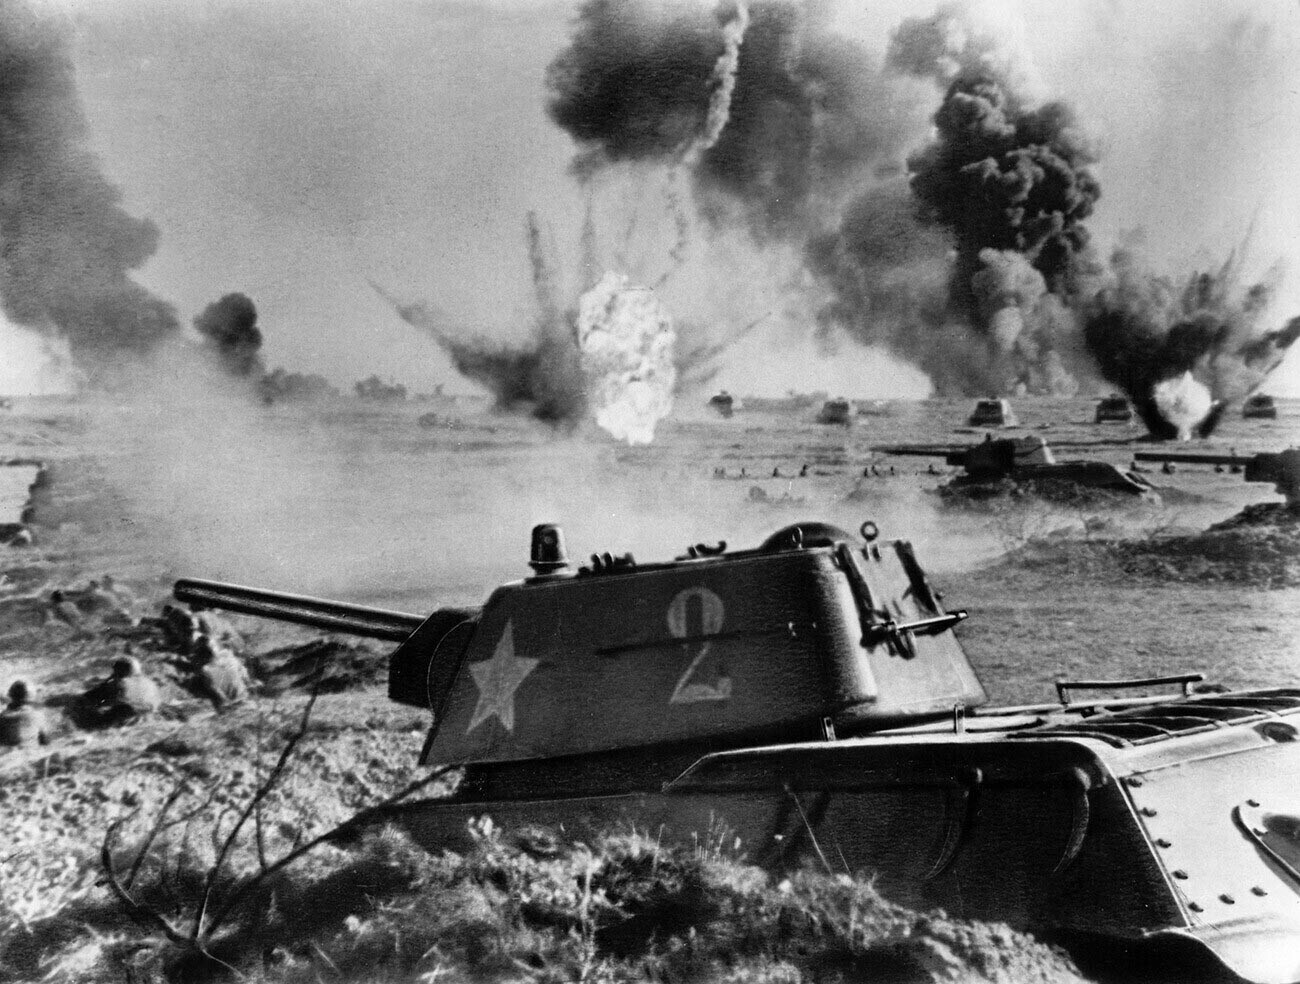 Битката за Сталинград, советски тенкови Т-34 во борба, 1942 или 1943 година.

